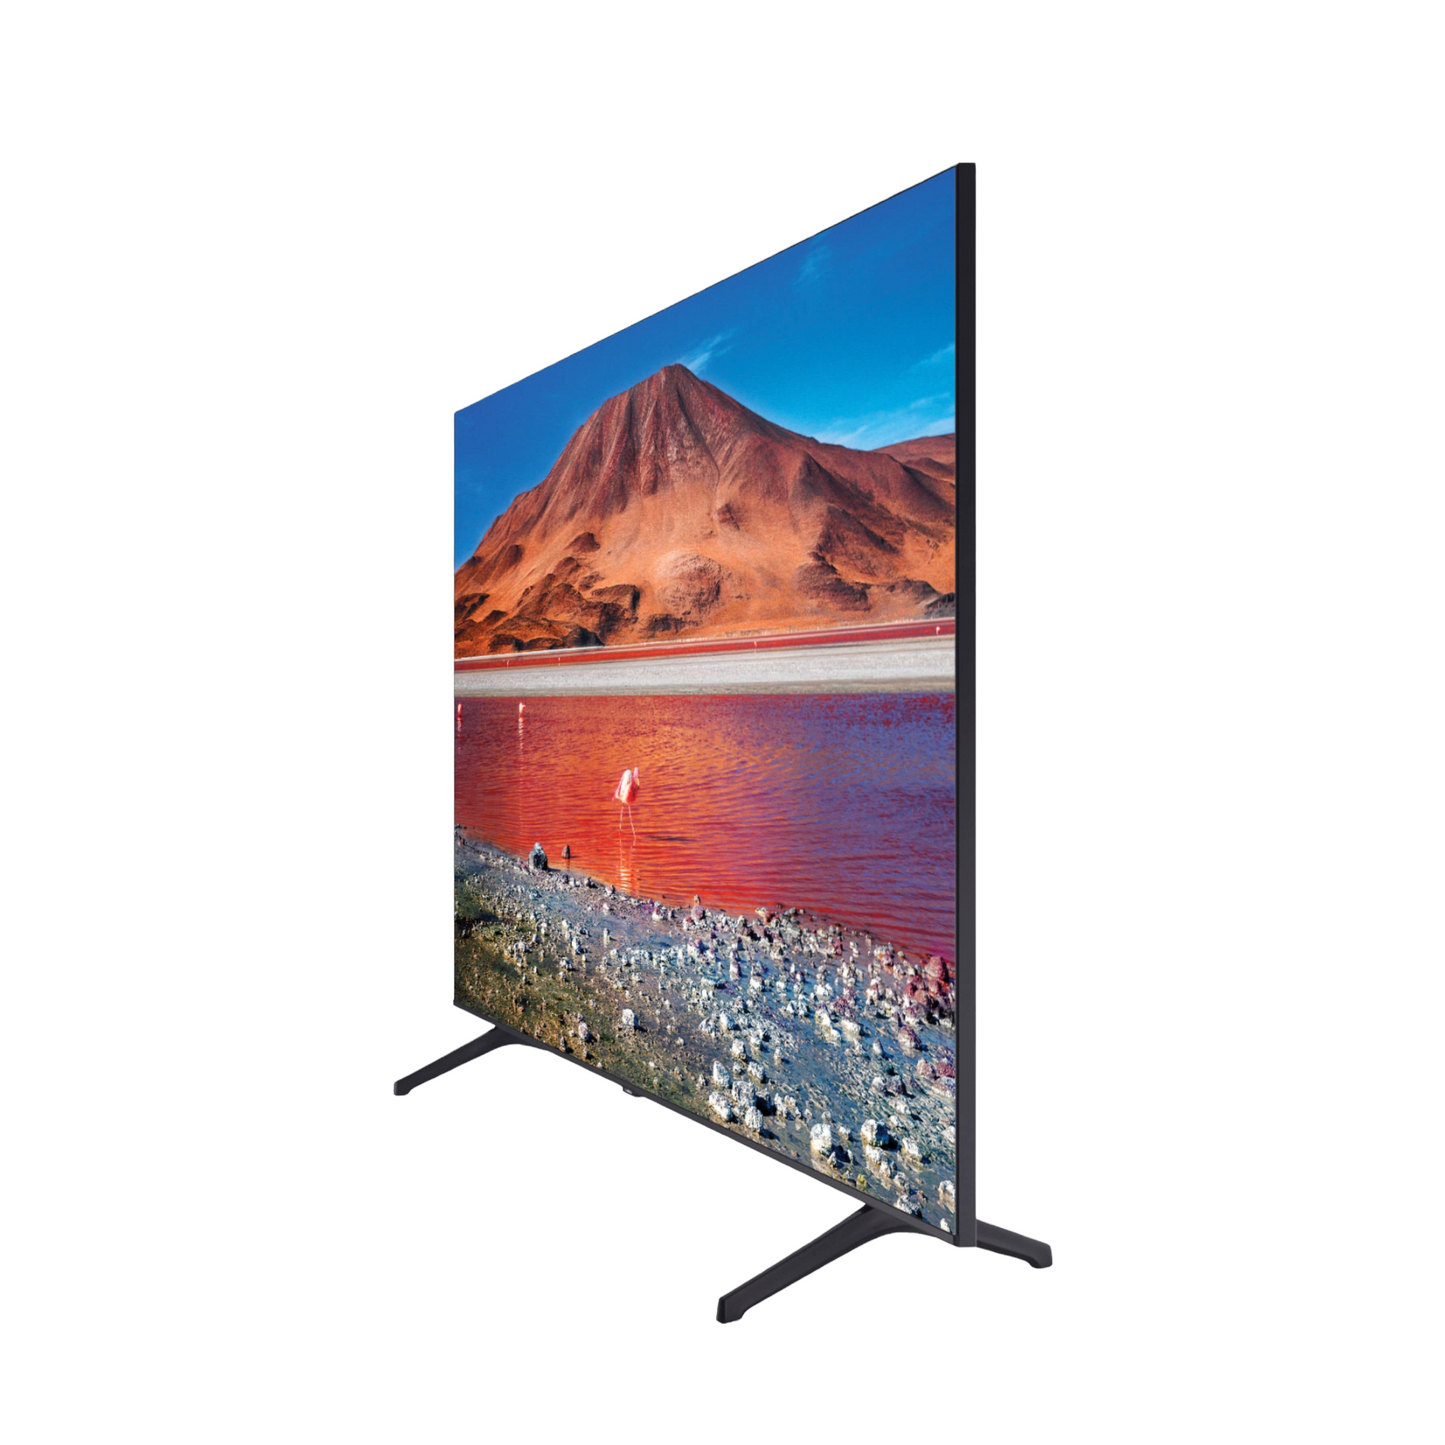 Samsung - 65" Class 7 Series LED 4K UHD Smart Tizen TV